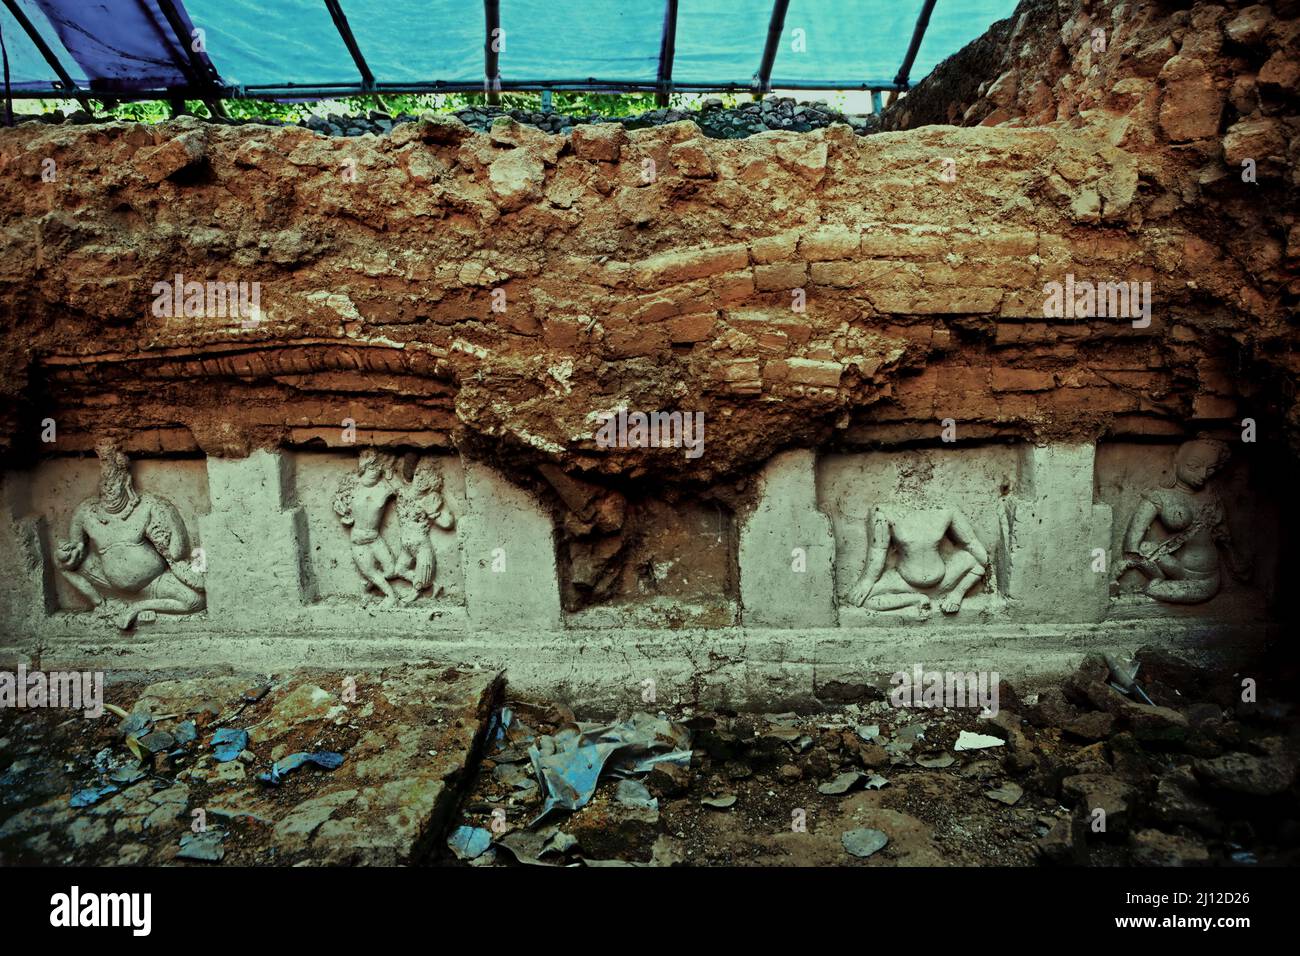 Stucco sulle mura dell'antico monastero di Moghalmari nel distretto di Paschim Medinipur, Bengala Occidentale, India. Memorie dei secoli 4th e 7h scritte dal pellegrino buddista cinese, fa Hien e Hiuen Tsang (Xuansang) avevano menzionato l'esistenza di fiorenti monasteri a Tampalipta (ora Tamluk), un antico porto situato nella stessa zona di Moghalmari. Il porto di Tamralipta era la porta principale per i pellegrini buddisti legati a Nalanda provenienti dal mare da Kuang-tung (ora Guangzhou, Cina), una lunga vela che avrebbe bisogno di un transito nei porti dell'impero Srivijaya lungo l'attuale stretto di Malacca. Foto Stock